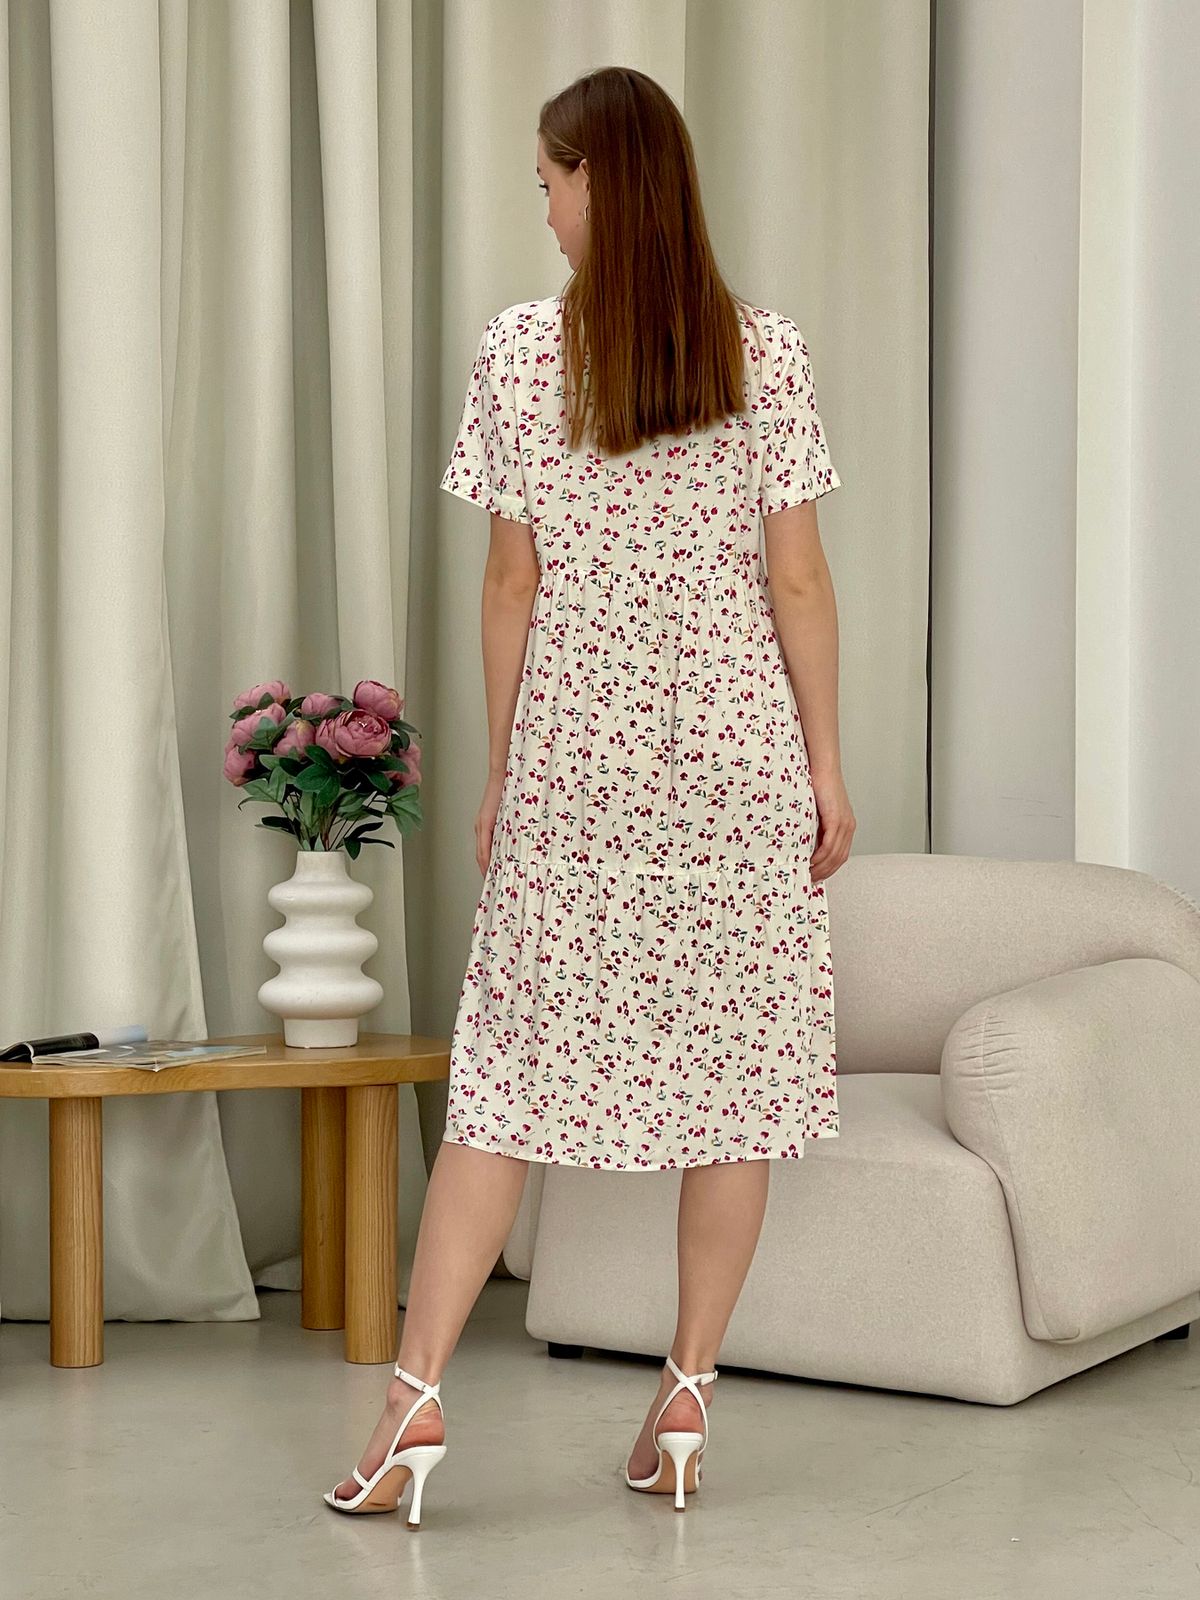 Купить Летнее платье с рюшами в цветочек белое Merlini Казерта 700001266 размер 42-44 (S-M) в интернет-магазине